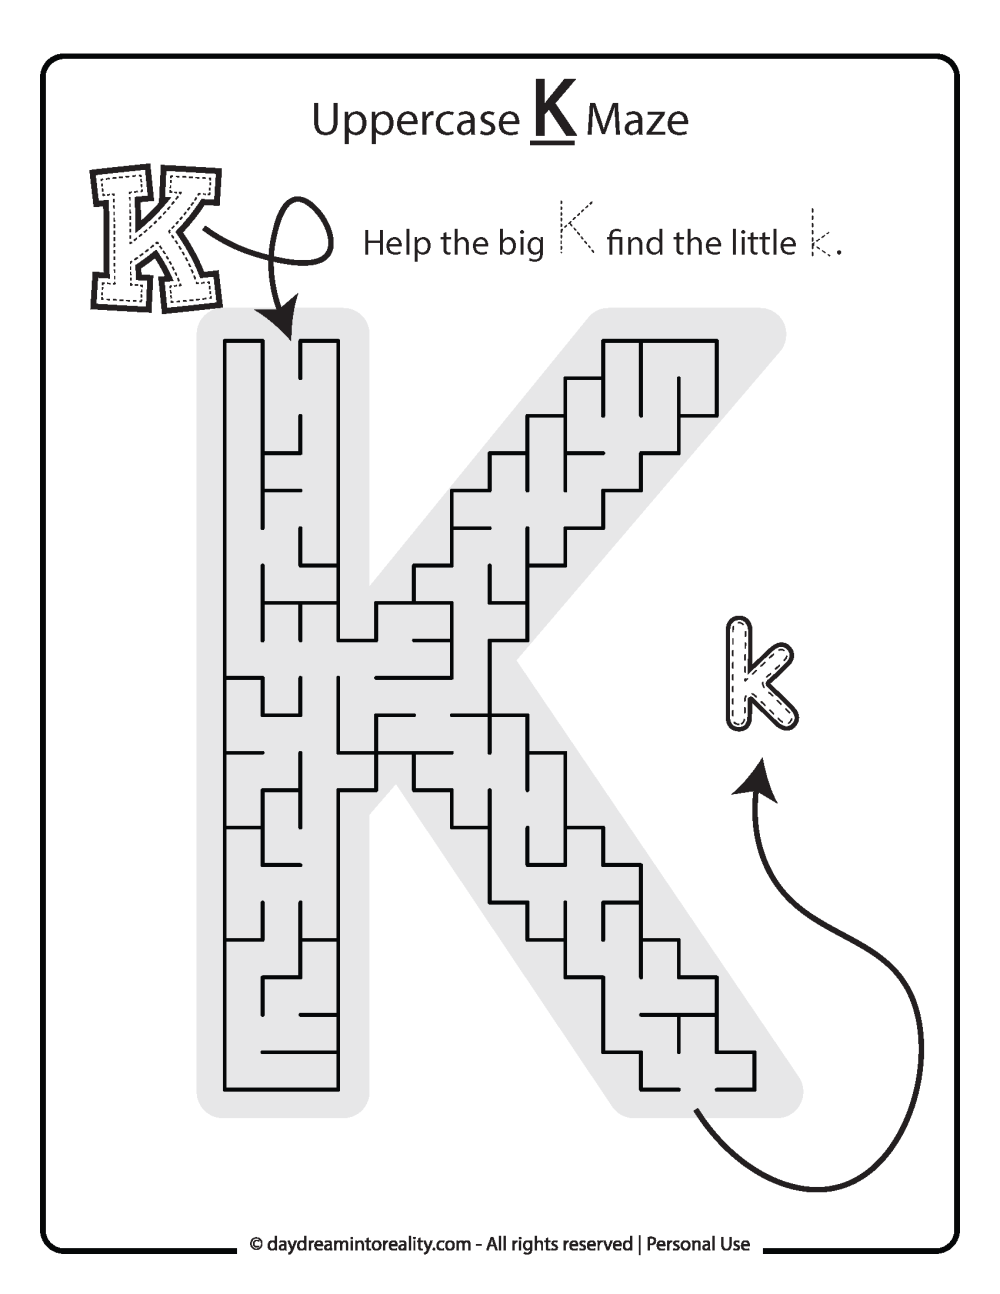 Uppercase "K" Maze Free Printable